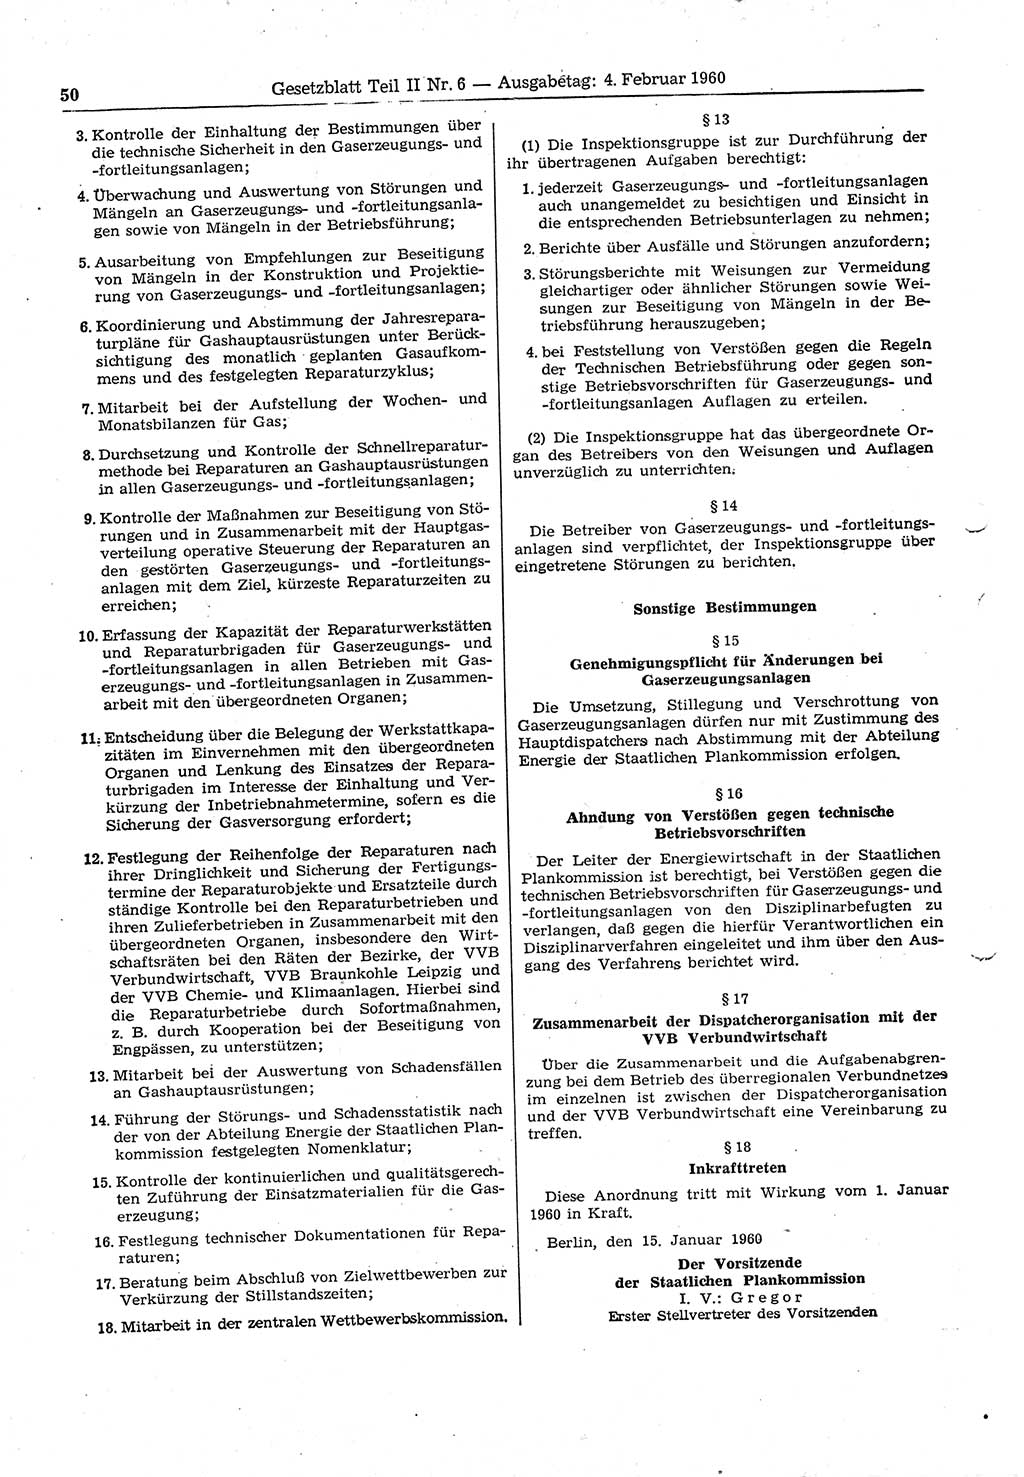 Gesetzblatt (GBl.) der Deutschen Demokratischen Republik (DDR) Teil ⅠⅠ 1960, Seite 50 (GBl. DDR ⅠⅠ 1960, S. 50)